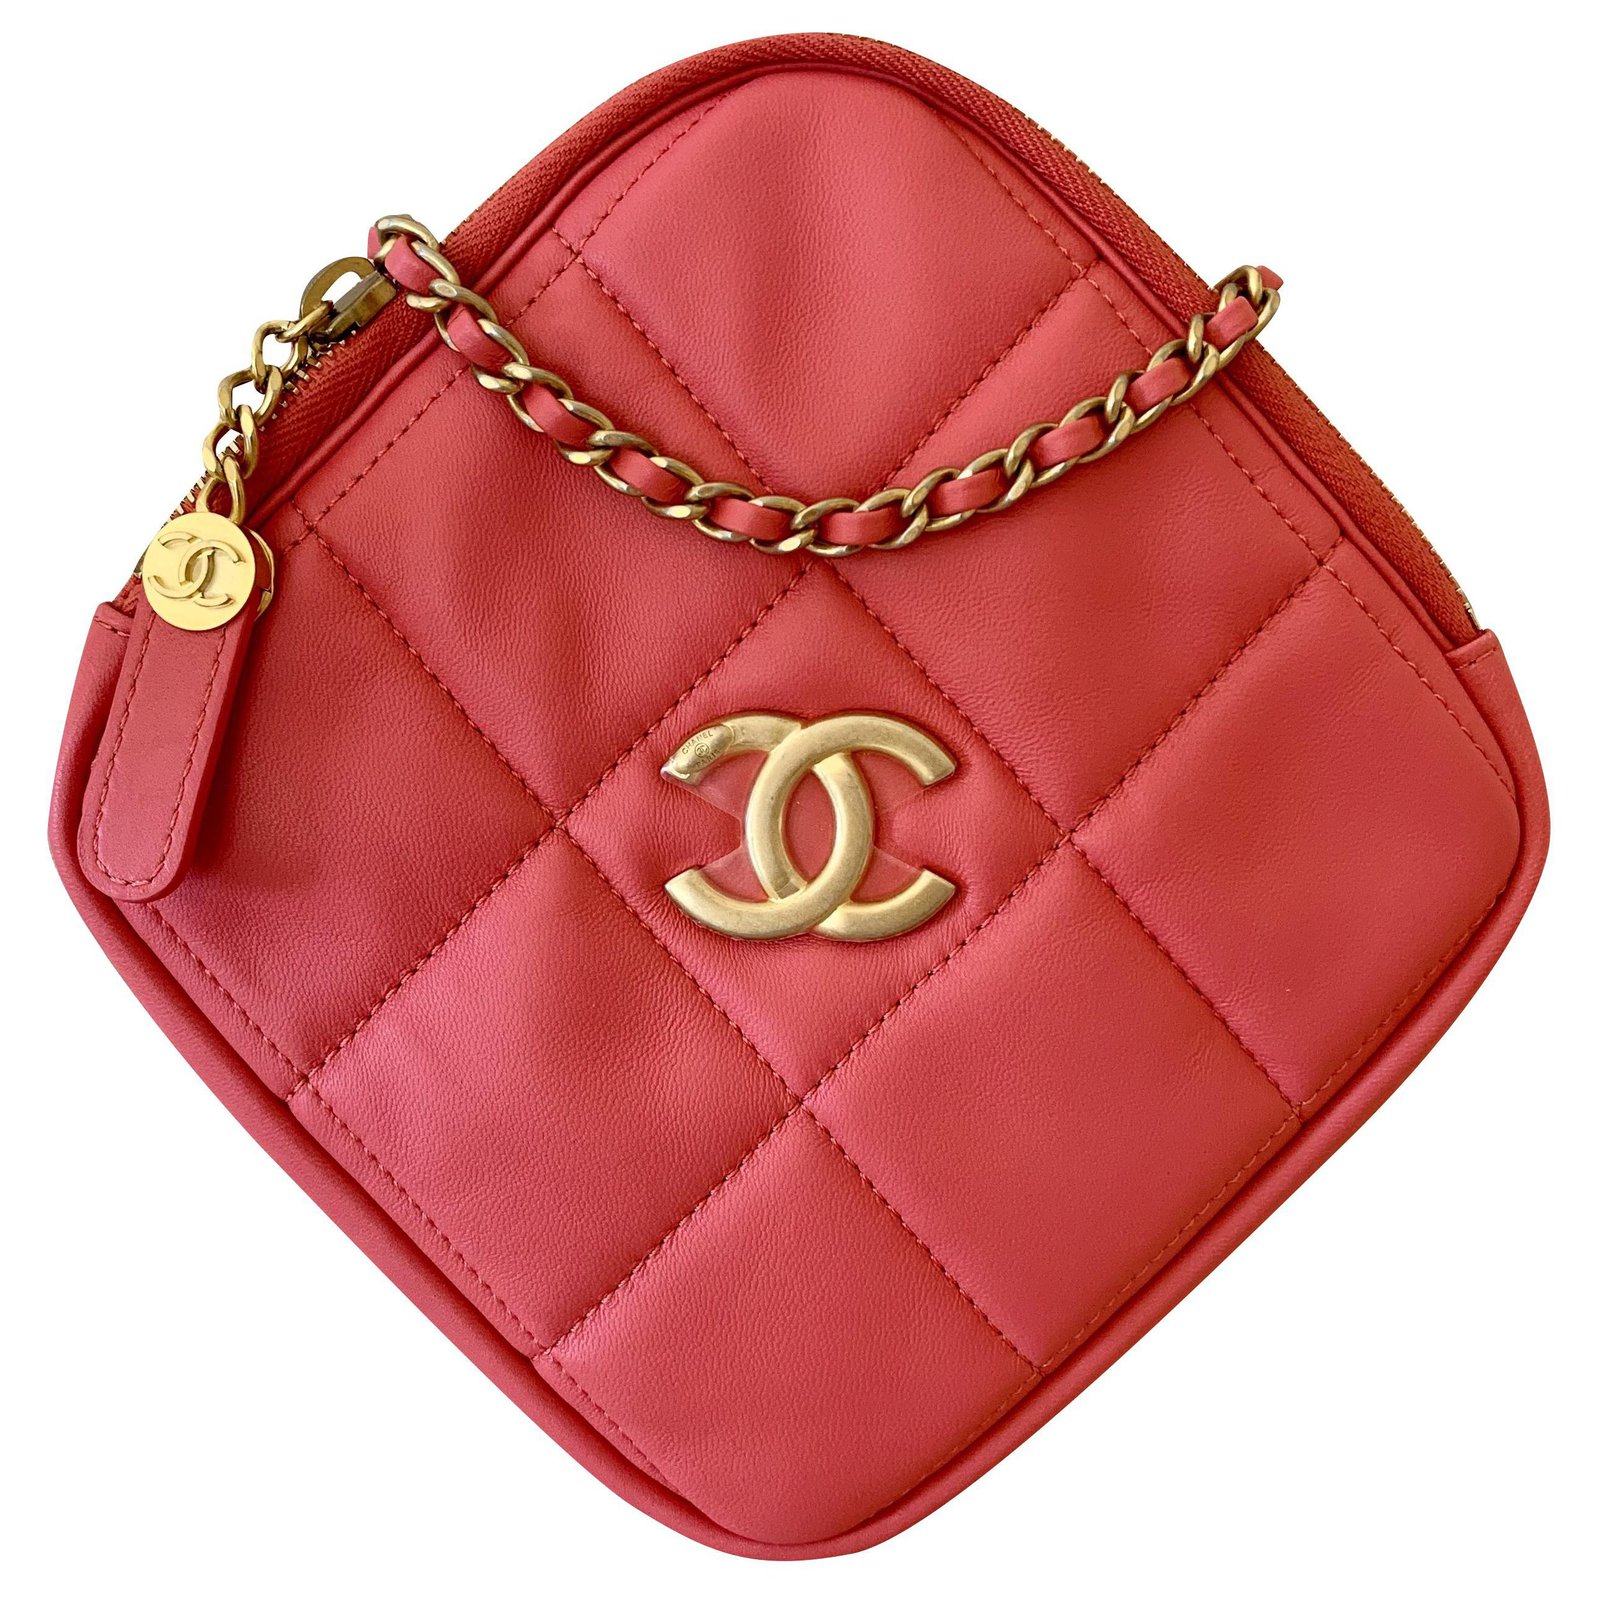 Handbags Chanel Runway Pink Lambskin Leather Diamond Cut Handbag